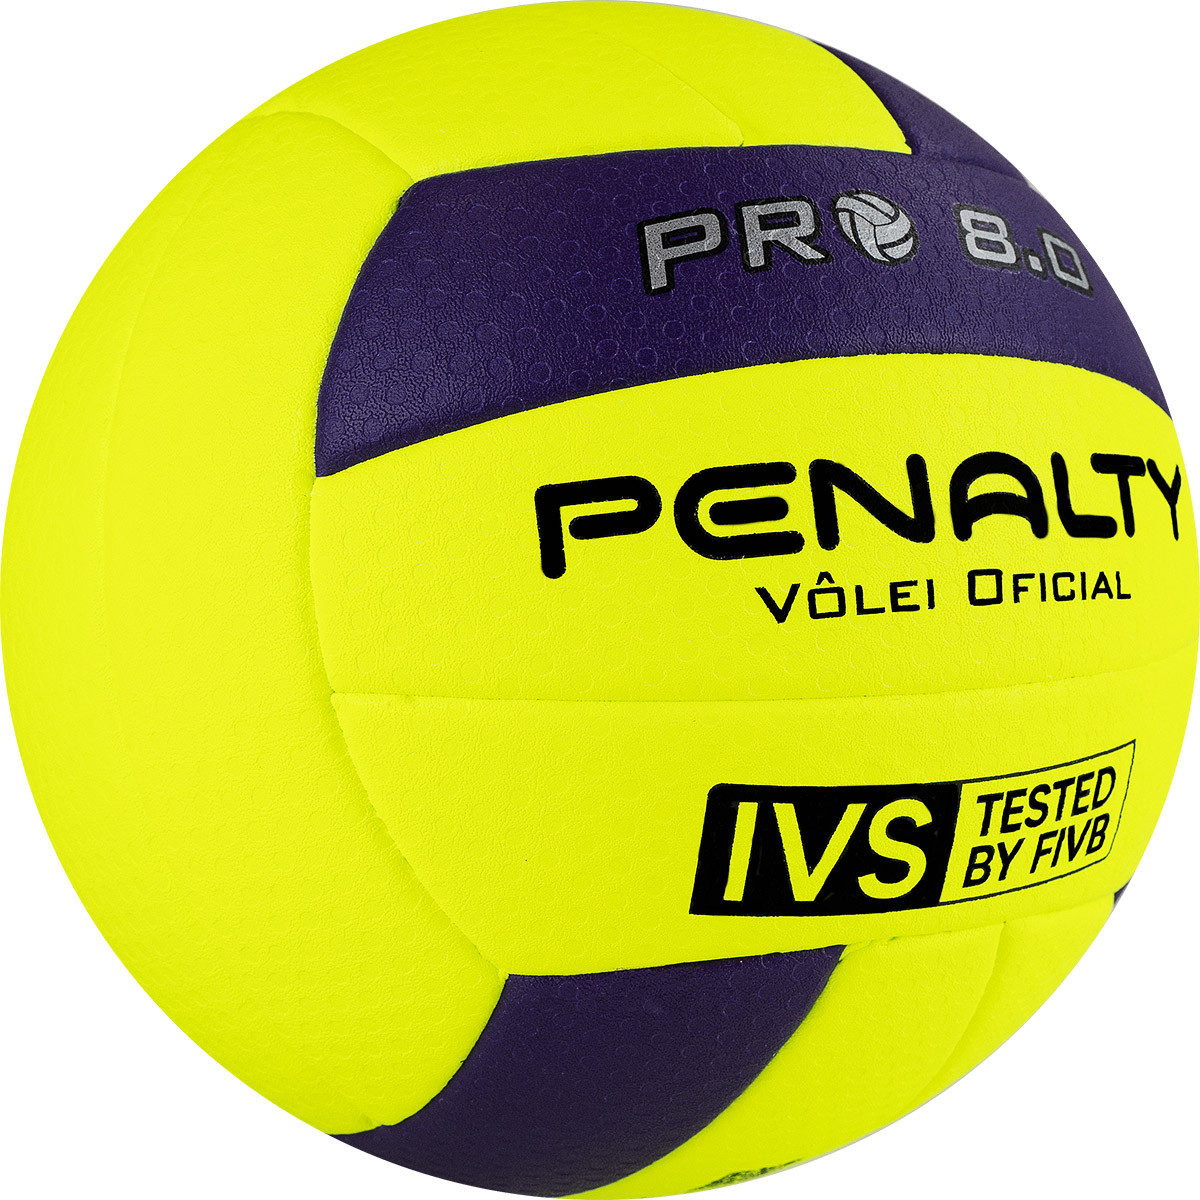 Мяч волейбольный Penalty Bola Volei 8.0 PRO FIVB Tested,5415822400-U, р.5, микрофибра, термосшивка 1200_1200